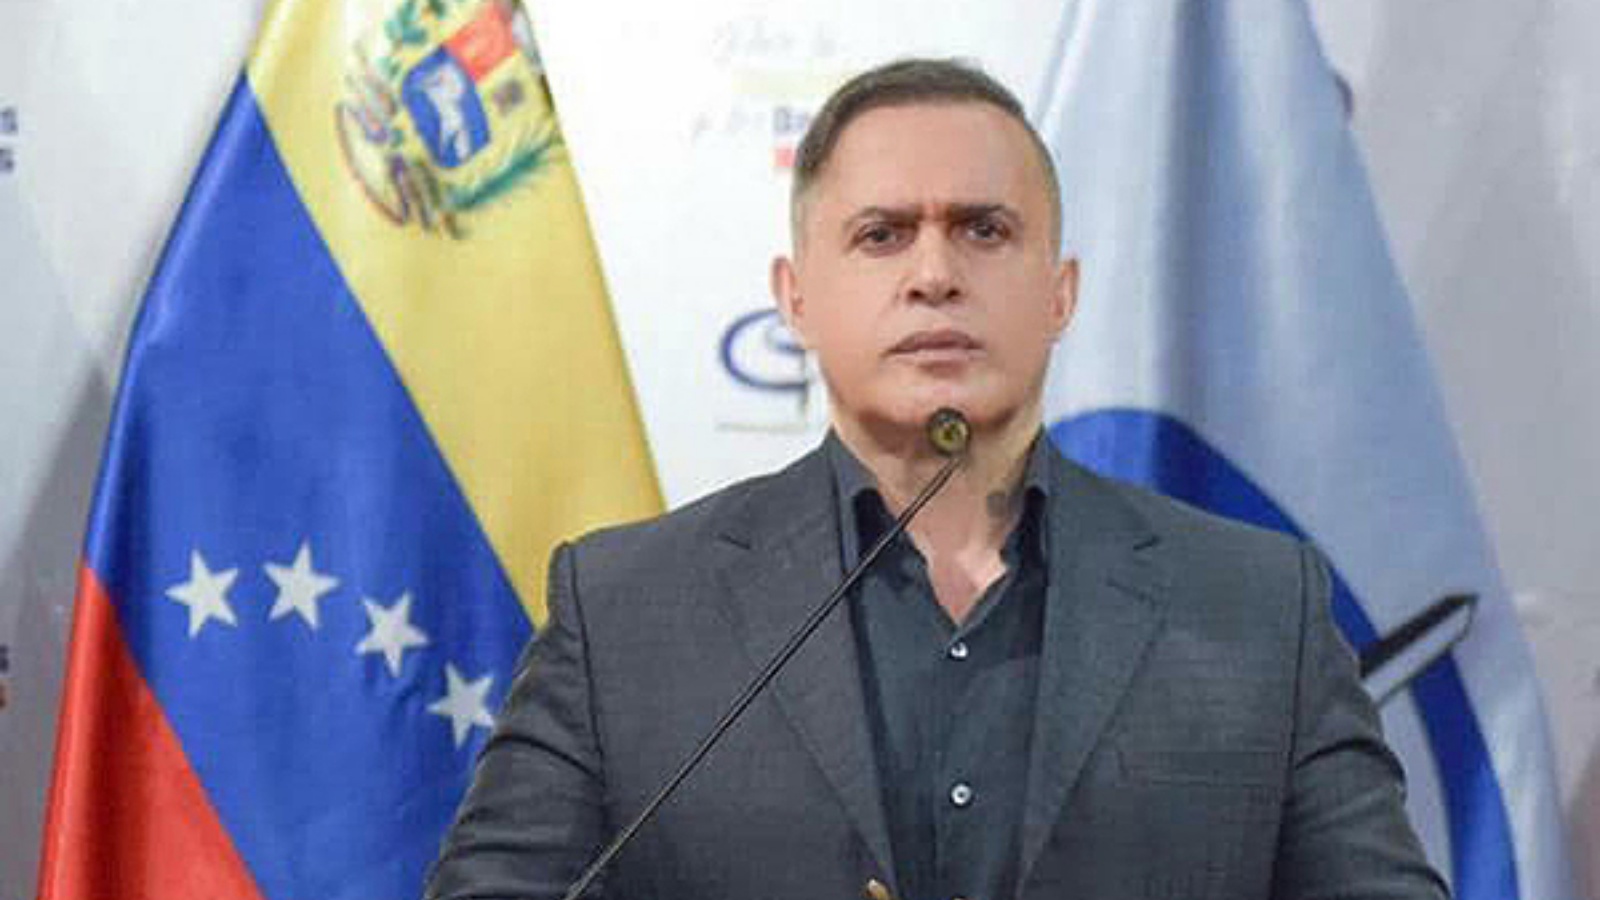 المدعي العام الفنزويلي طارق وليام صعب (عن صفحة MinPublicoVE في تويتر).